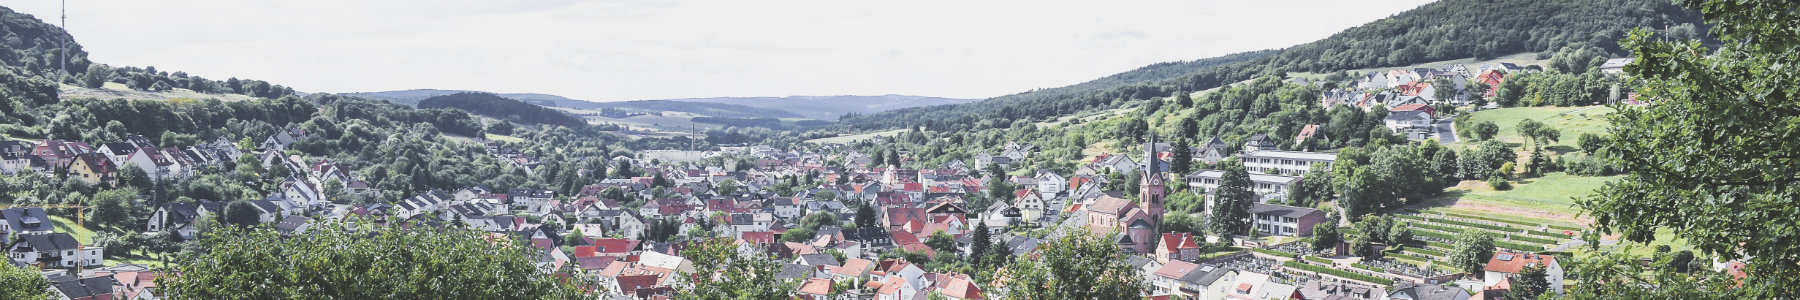 Grundsteuererklärung – Gemeinde Waldaschaff - Reizvoll, Naturverbunden, Erlebnisreich